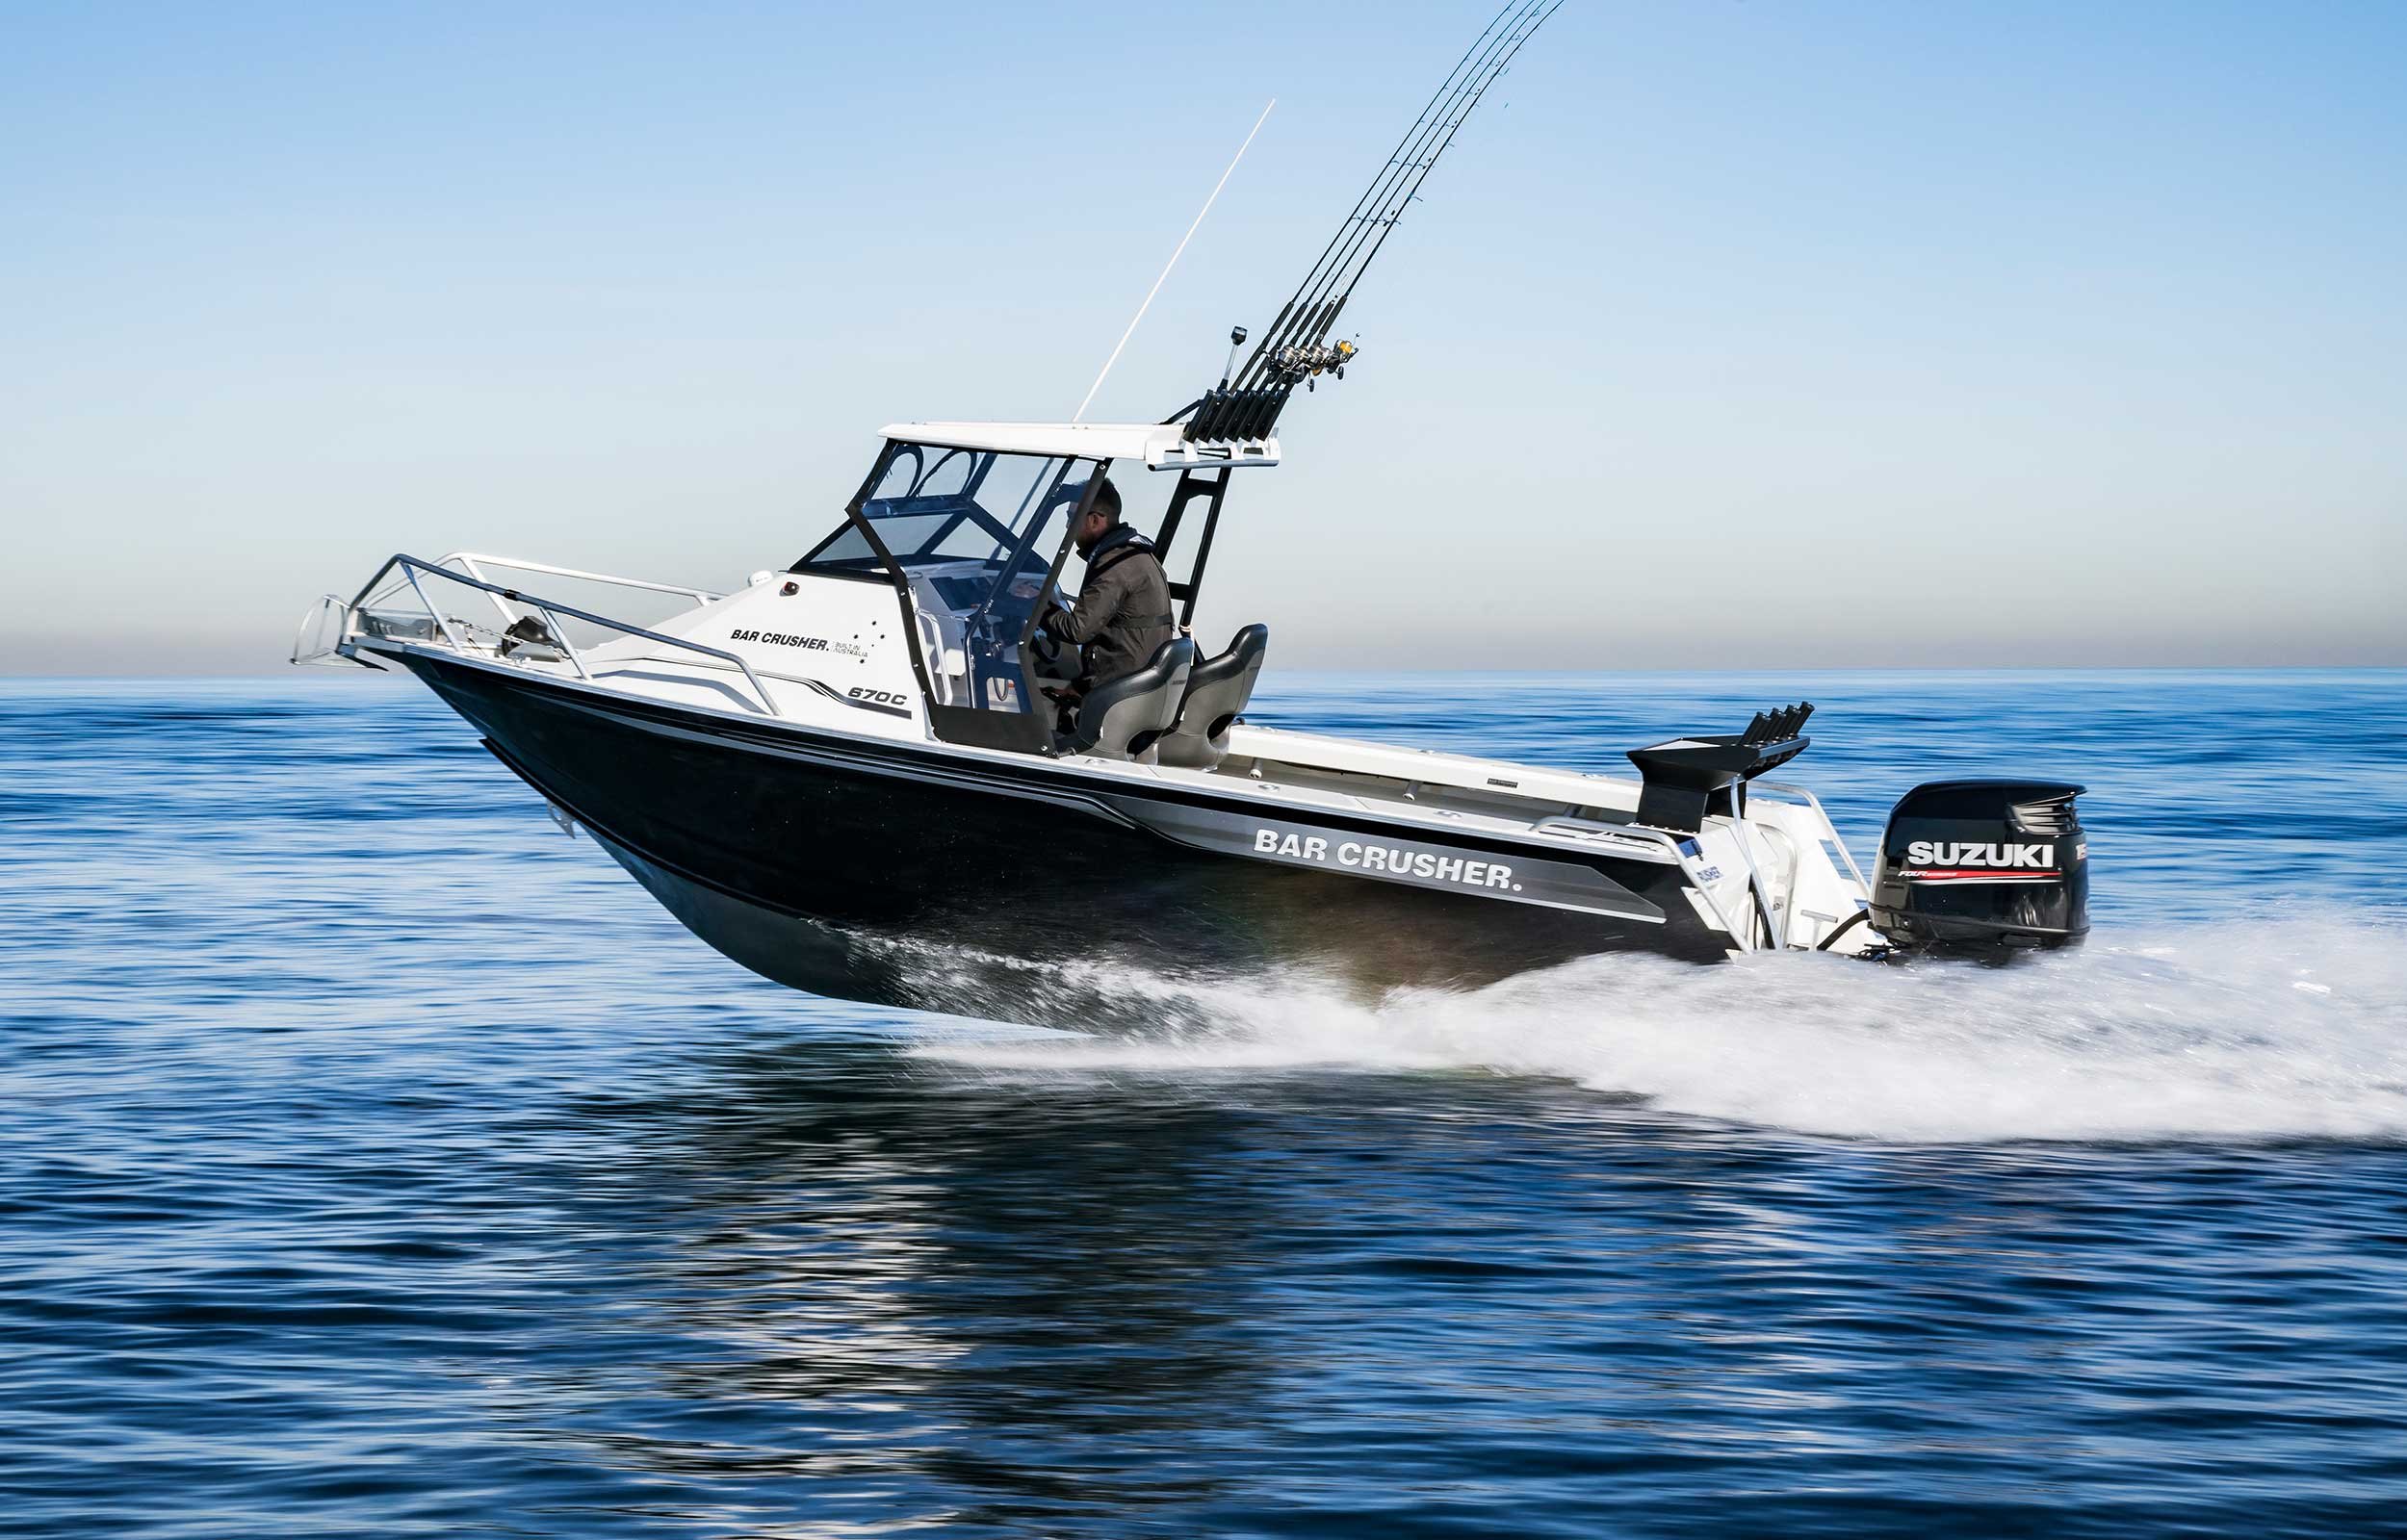 models-bar-crusher-670c-plate-aluminium-fishing-boat-2019-web-7-1